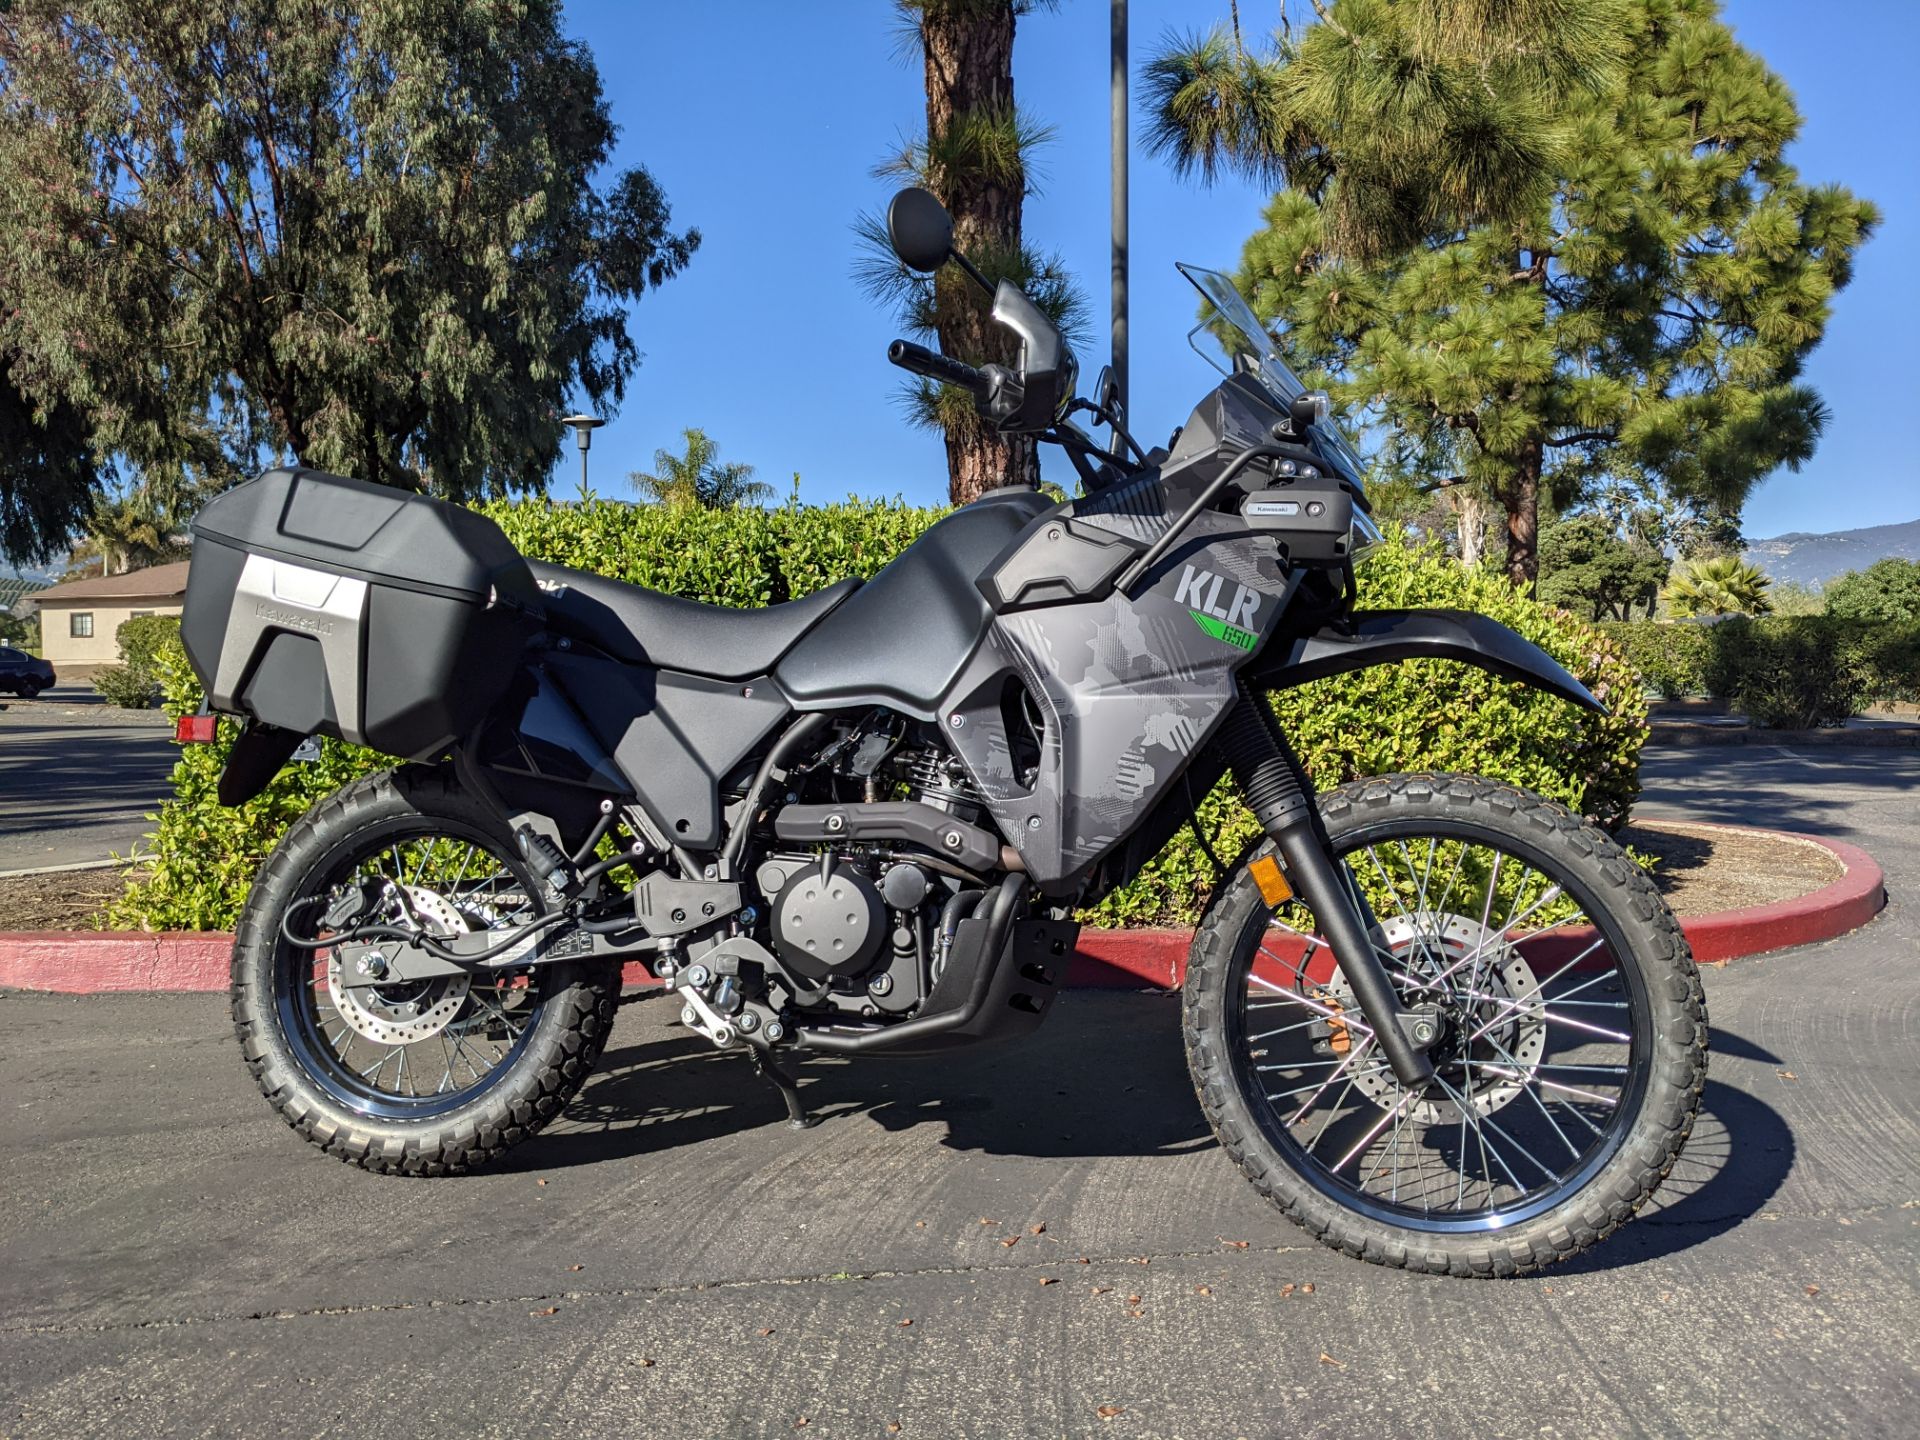 2022 Kawasaki KLR 650 Adventure in Goleta, California - Photo 1